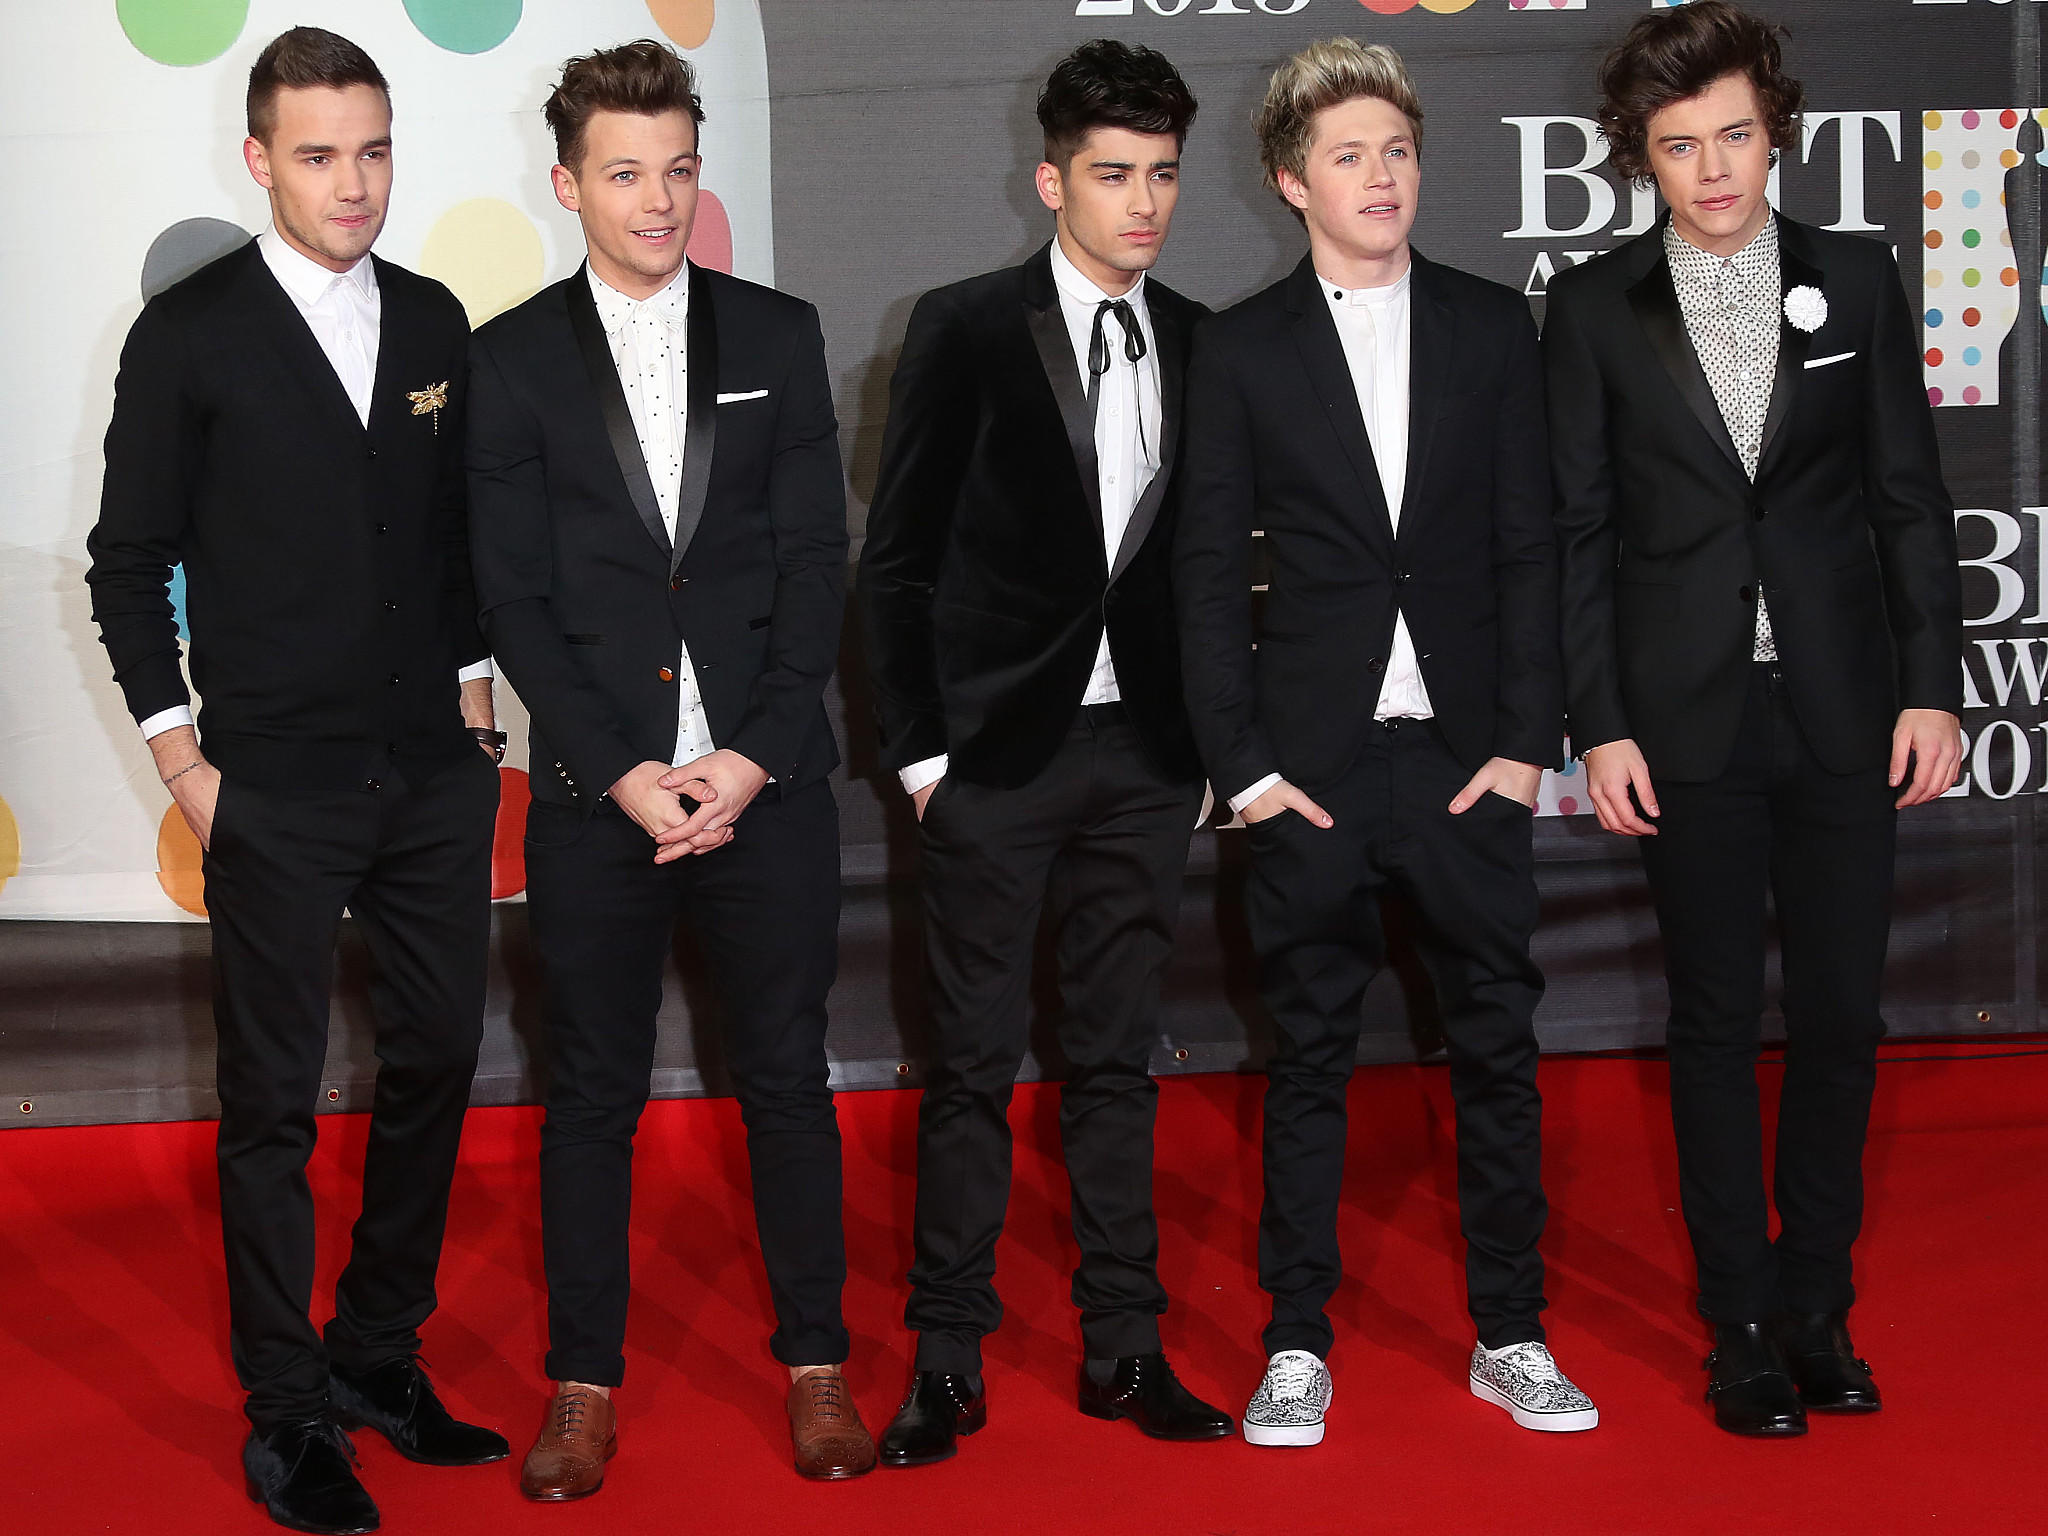 Brit Awards 2013 Roter Teppich Kleider